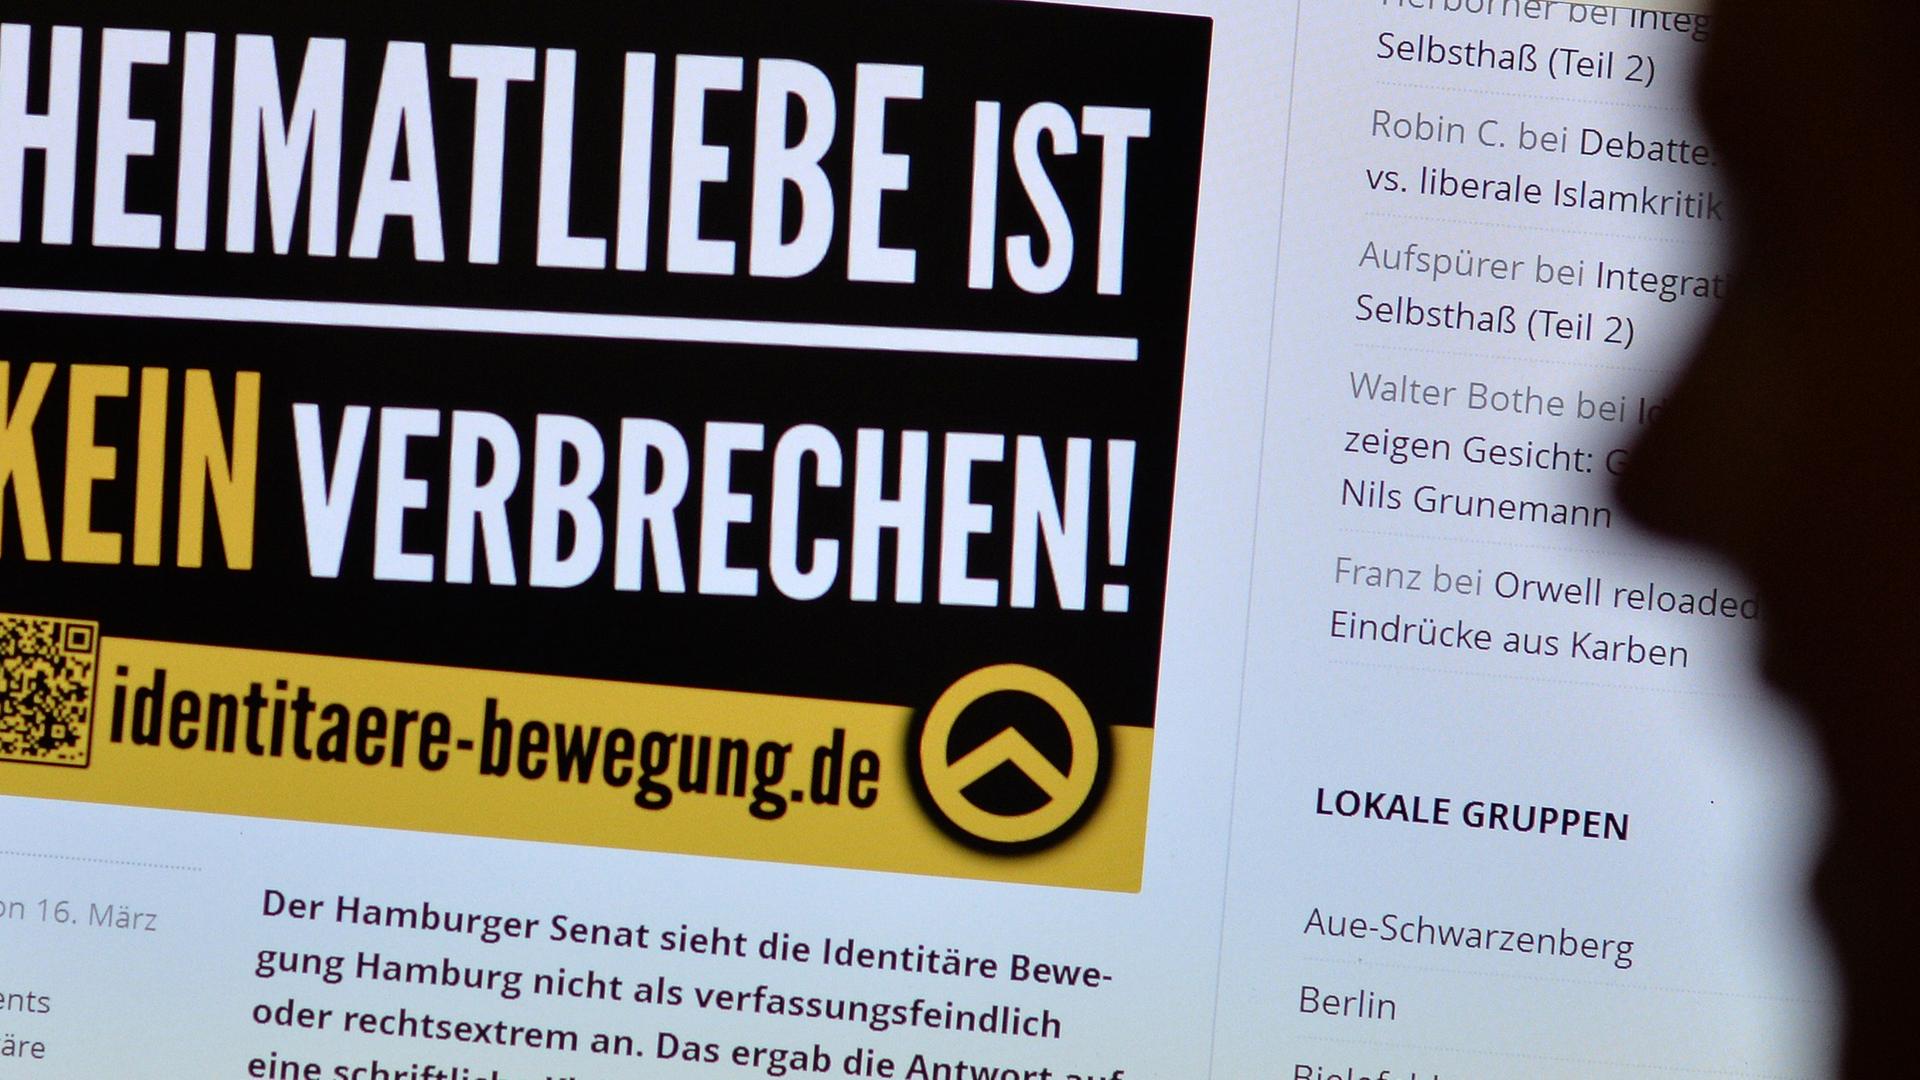 Jugendliche betrachten am 09.07.2013 in Berlin eine im rechten Bereich agierende Webseite.